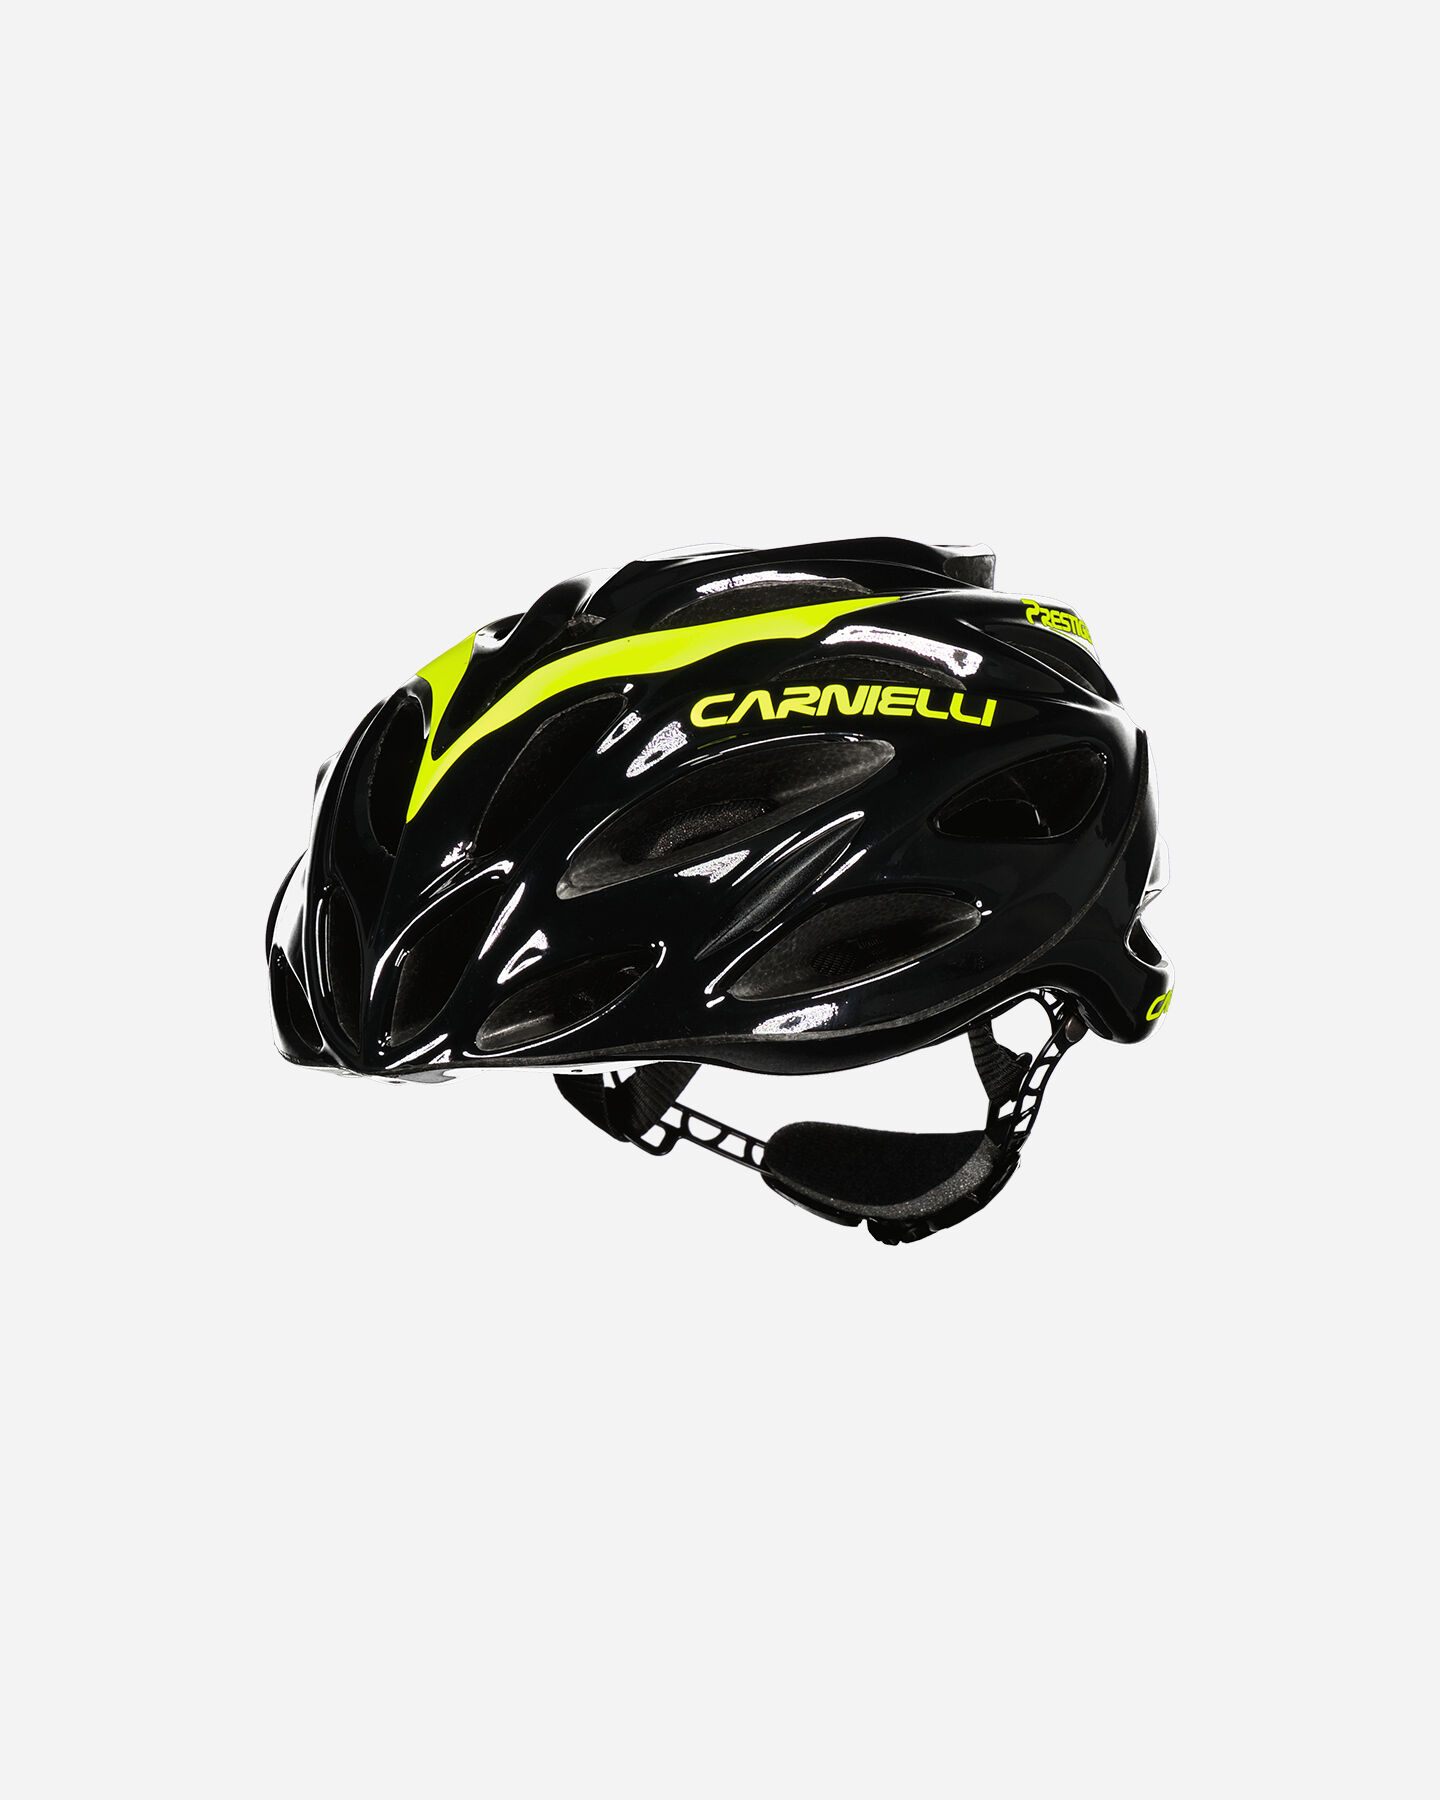  Casco bici CARNIELLI PRESTIGE STRADA  S4111759|1|55-60 scatto 0